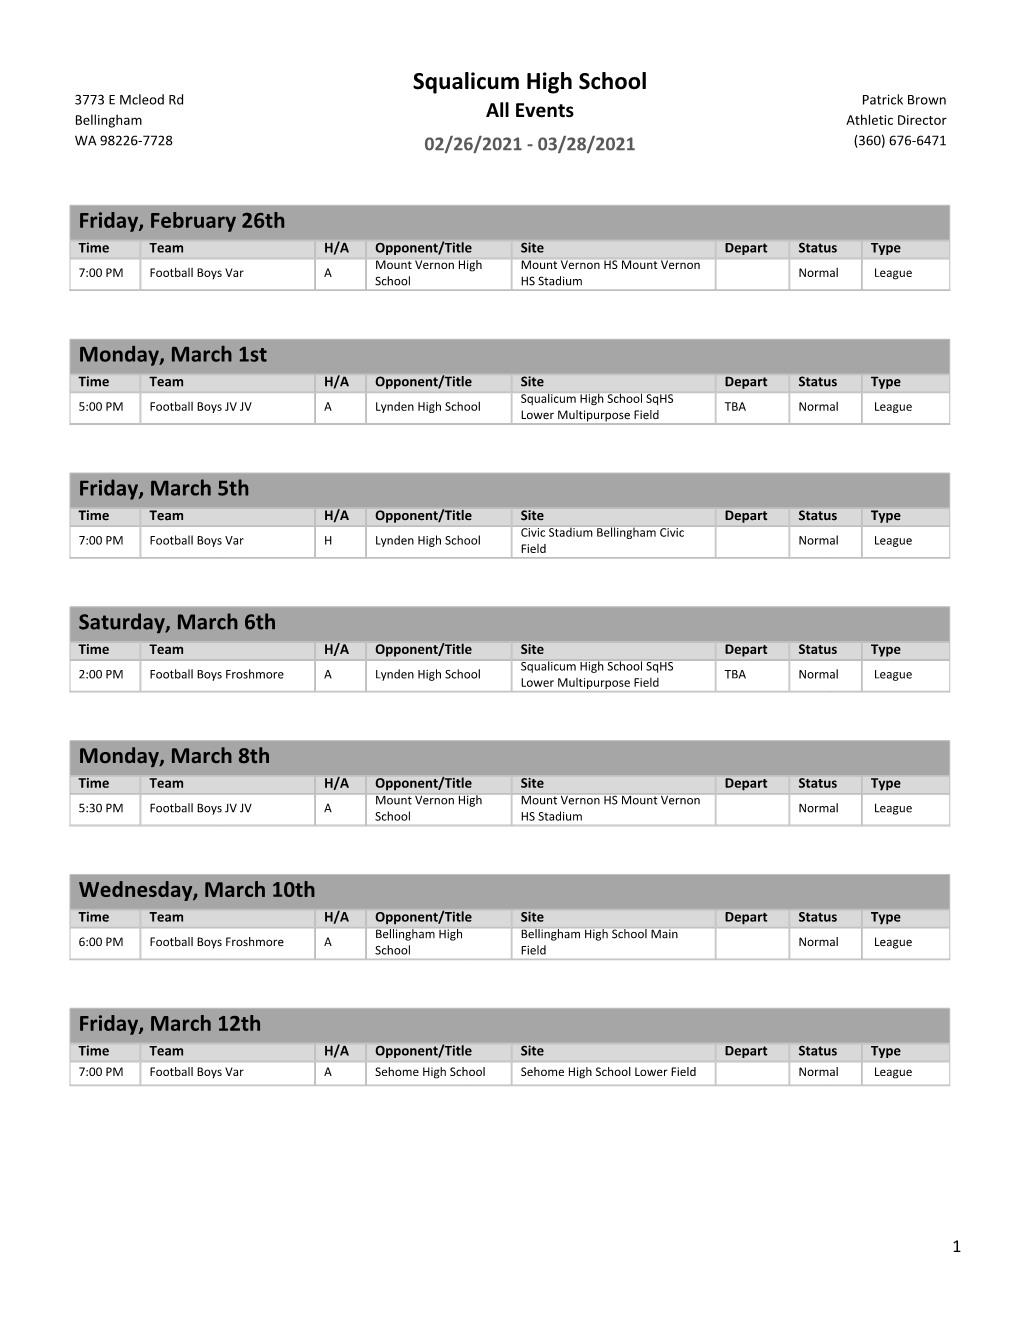 Storm Football Schedule